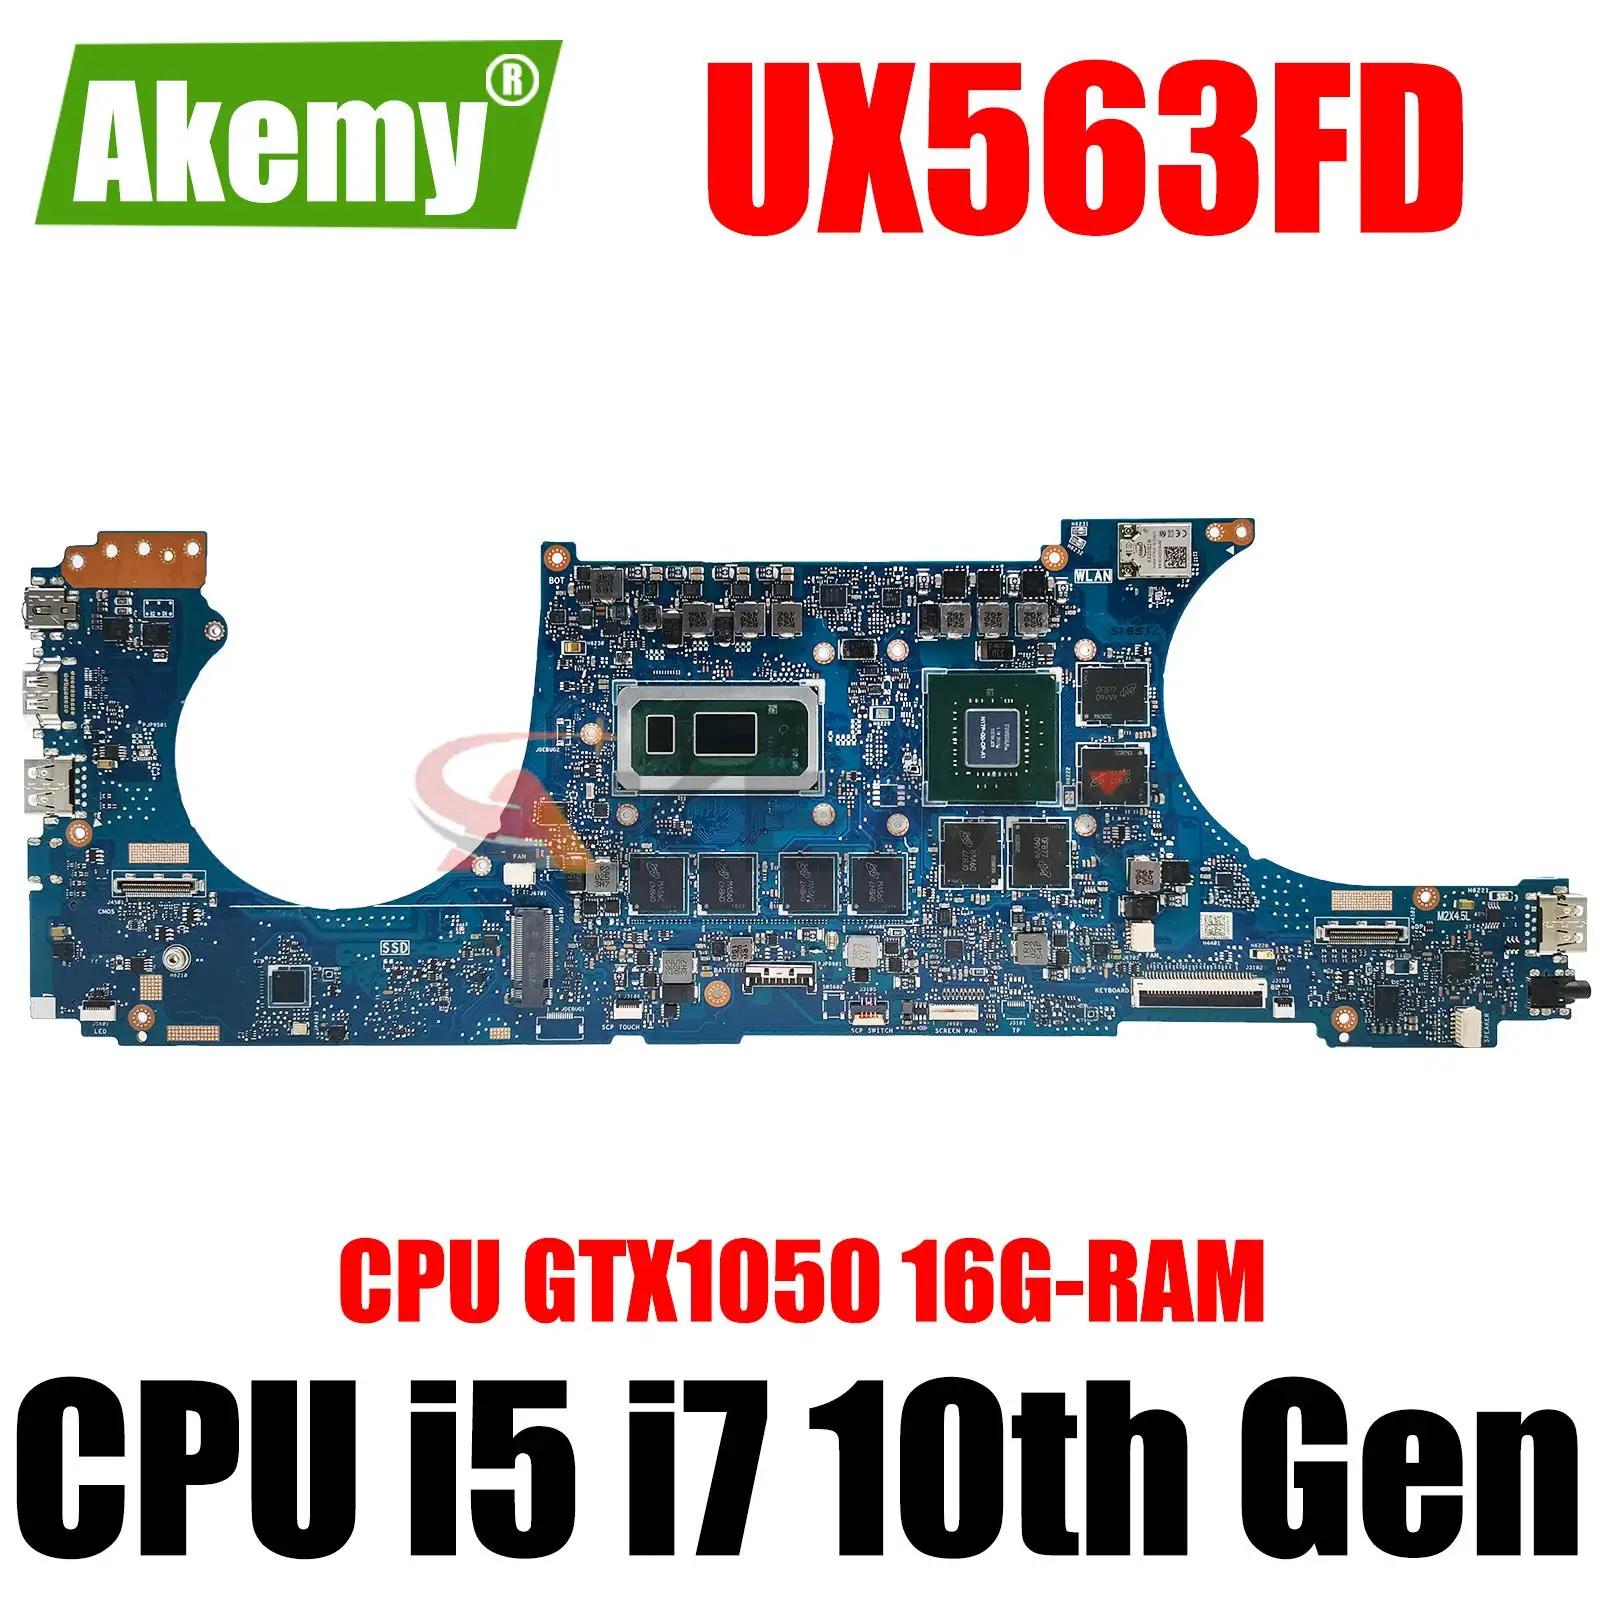 AKEMY UX563FD Ʈ , Asus ZenBook ø 15, Q536FD, UX563F, BX563FD, RX563FD, i5, i7, 10  GTX1050, 16G RAM